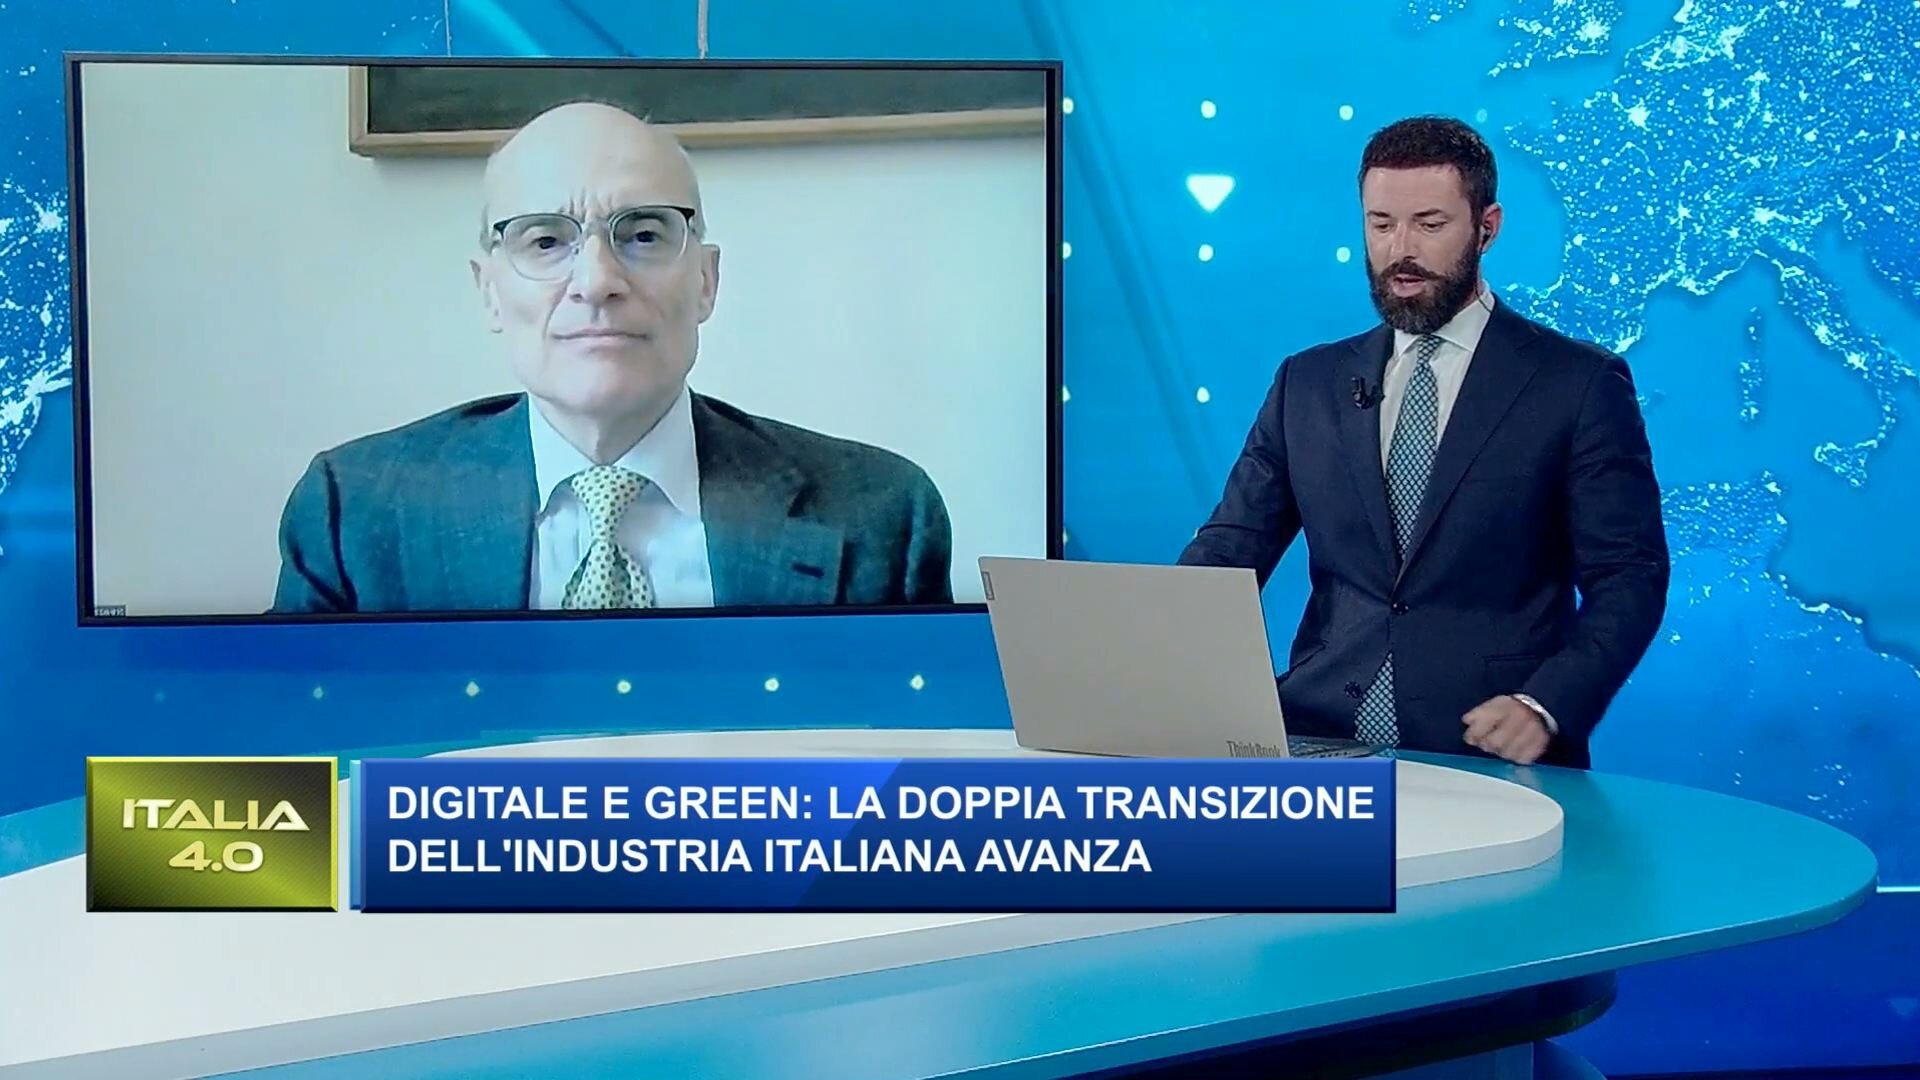 Digitale e green: la doppia transizione dell'industria italiana avanza